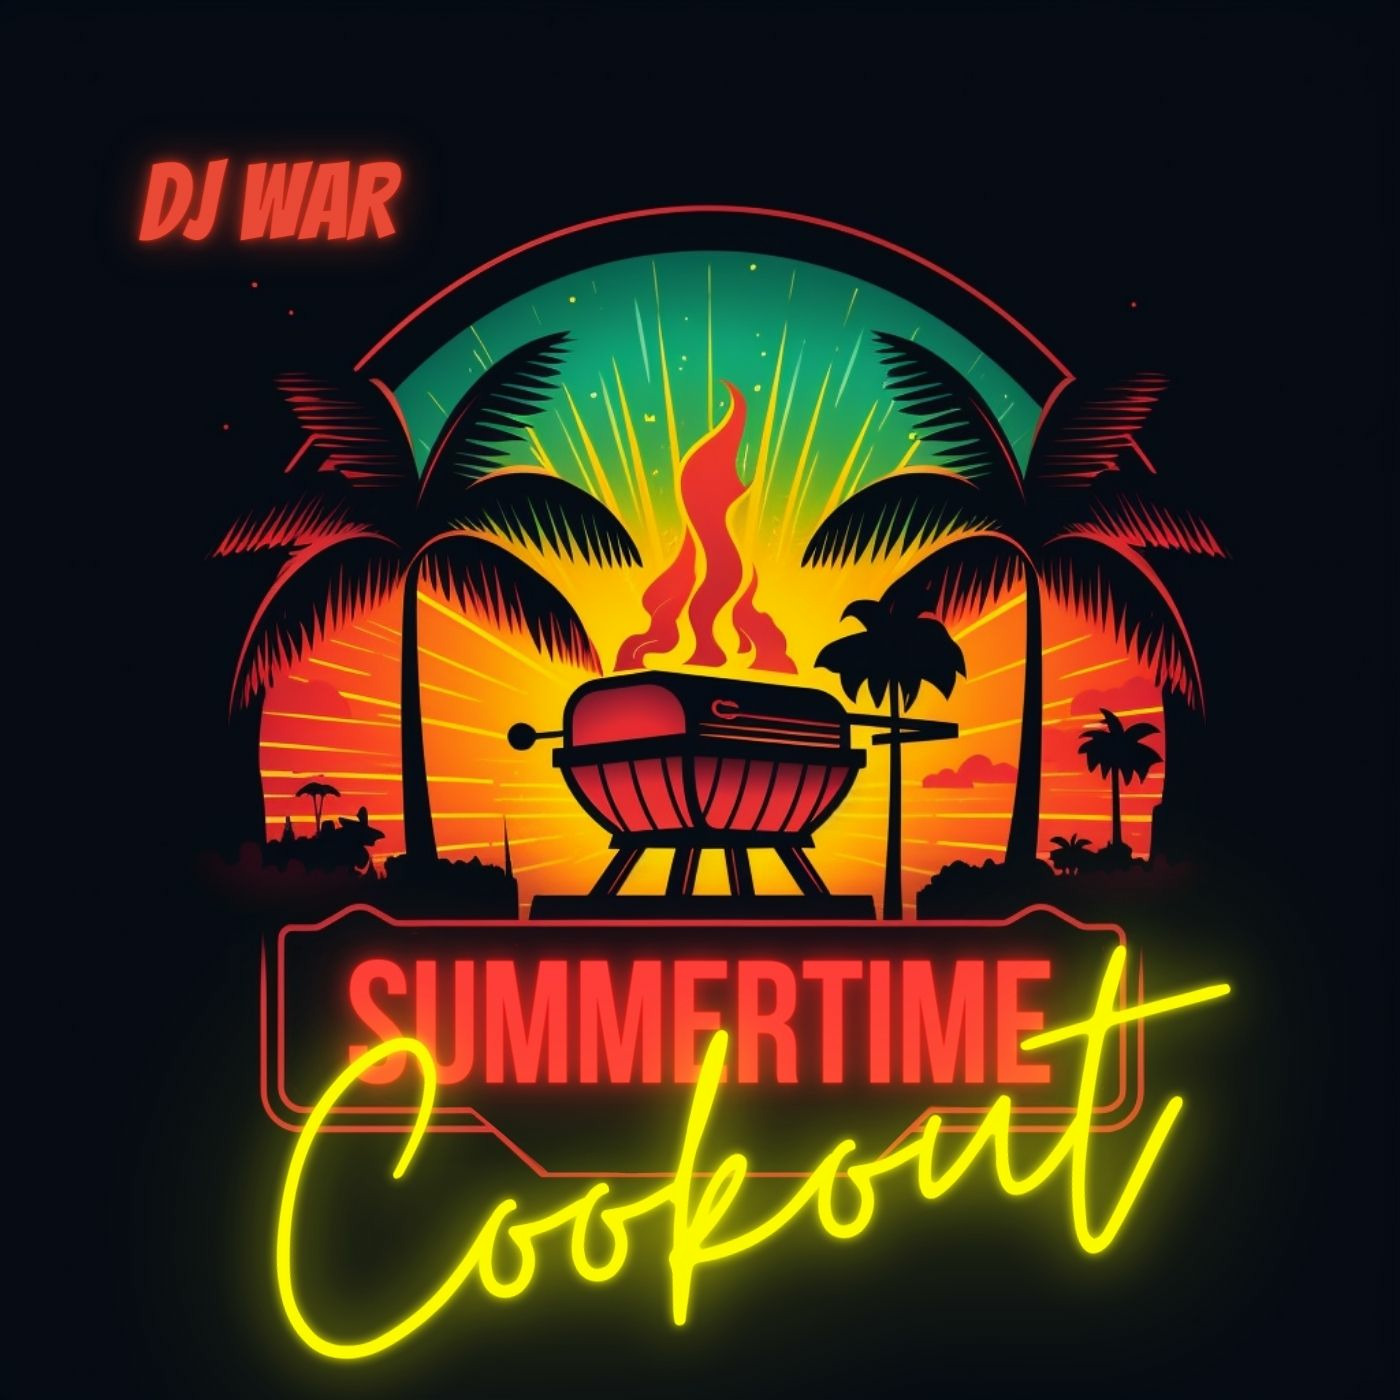 DJ War - Summertime Cookout